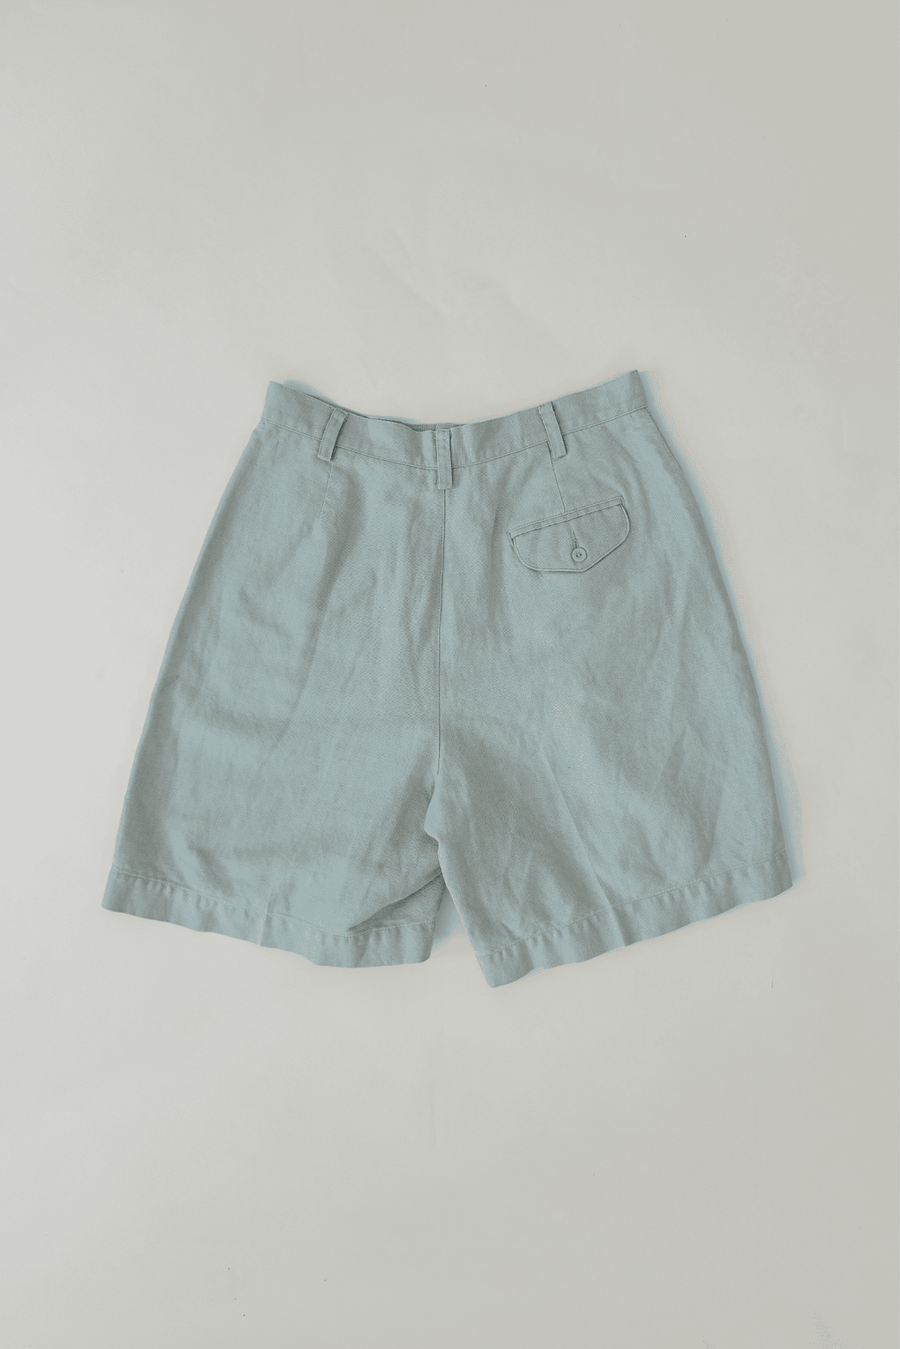 2000s Vintage Linen Cotton Liz Claiborne Lizsport Light Blue High Waist Shorts Size 10